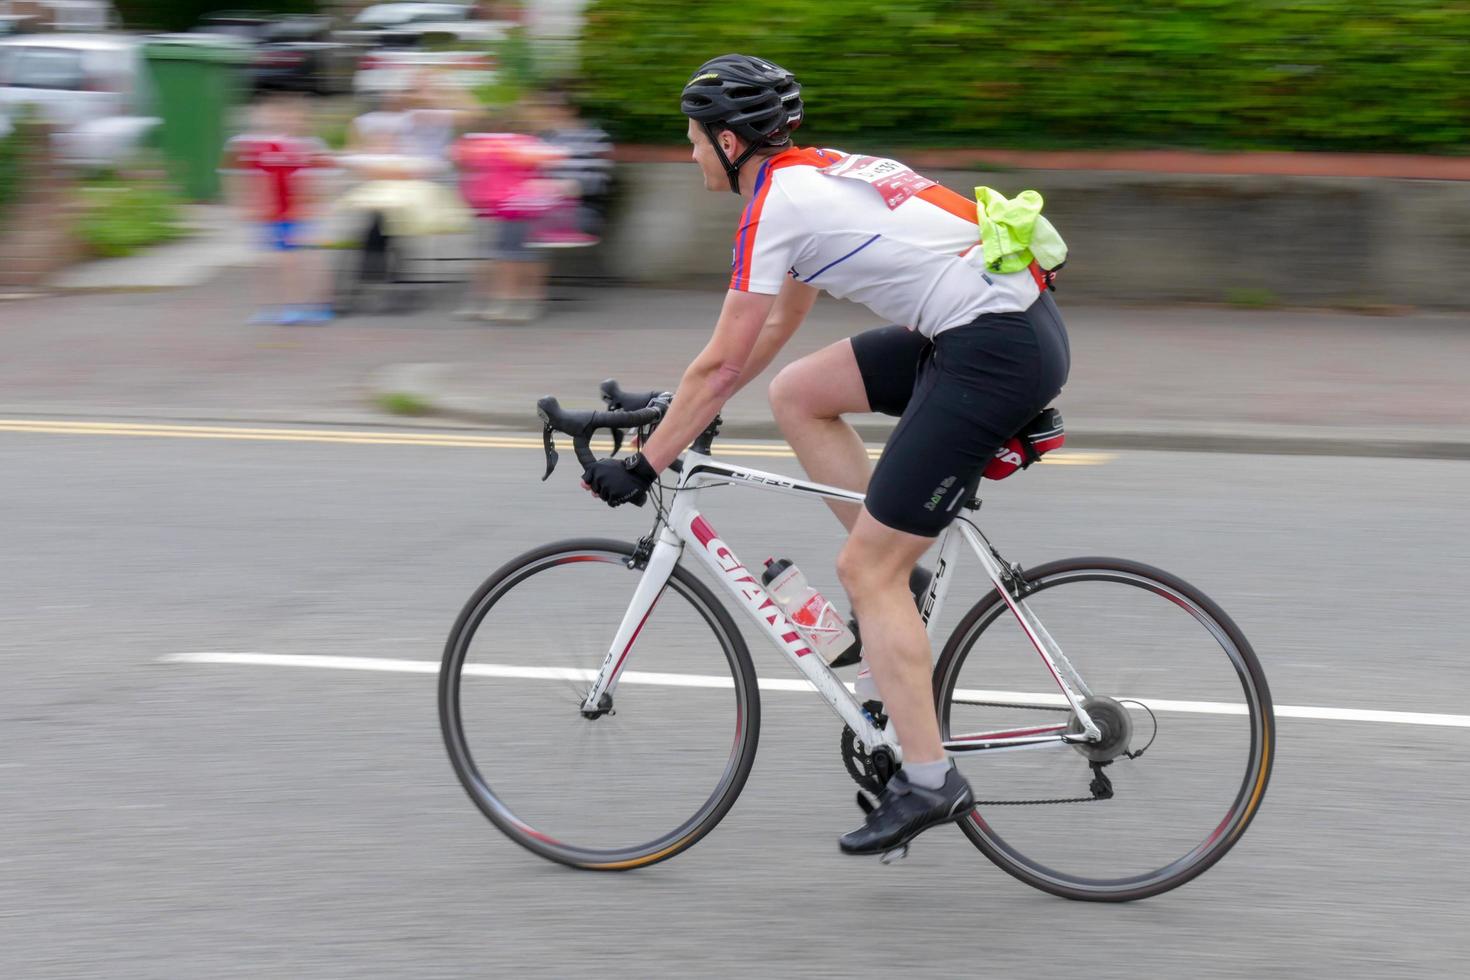 cardiff, wales, uk, 2015. radfahrer, der an der velothon-radsportveranstaltung teilnimmt foto